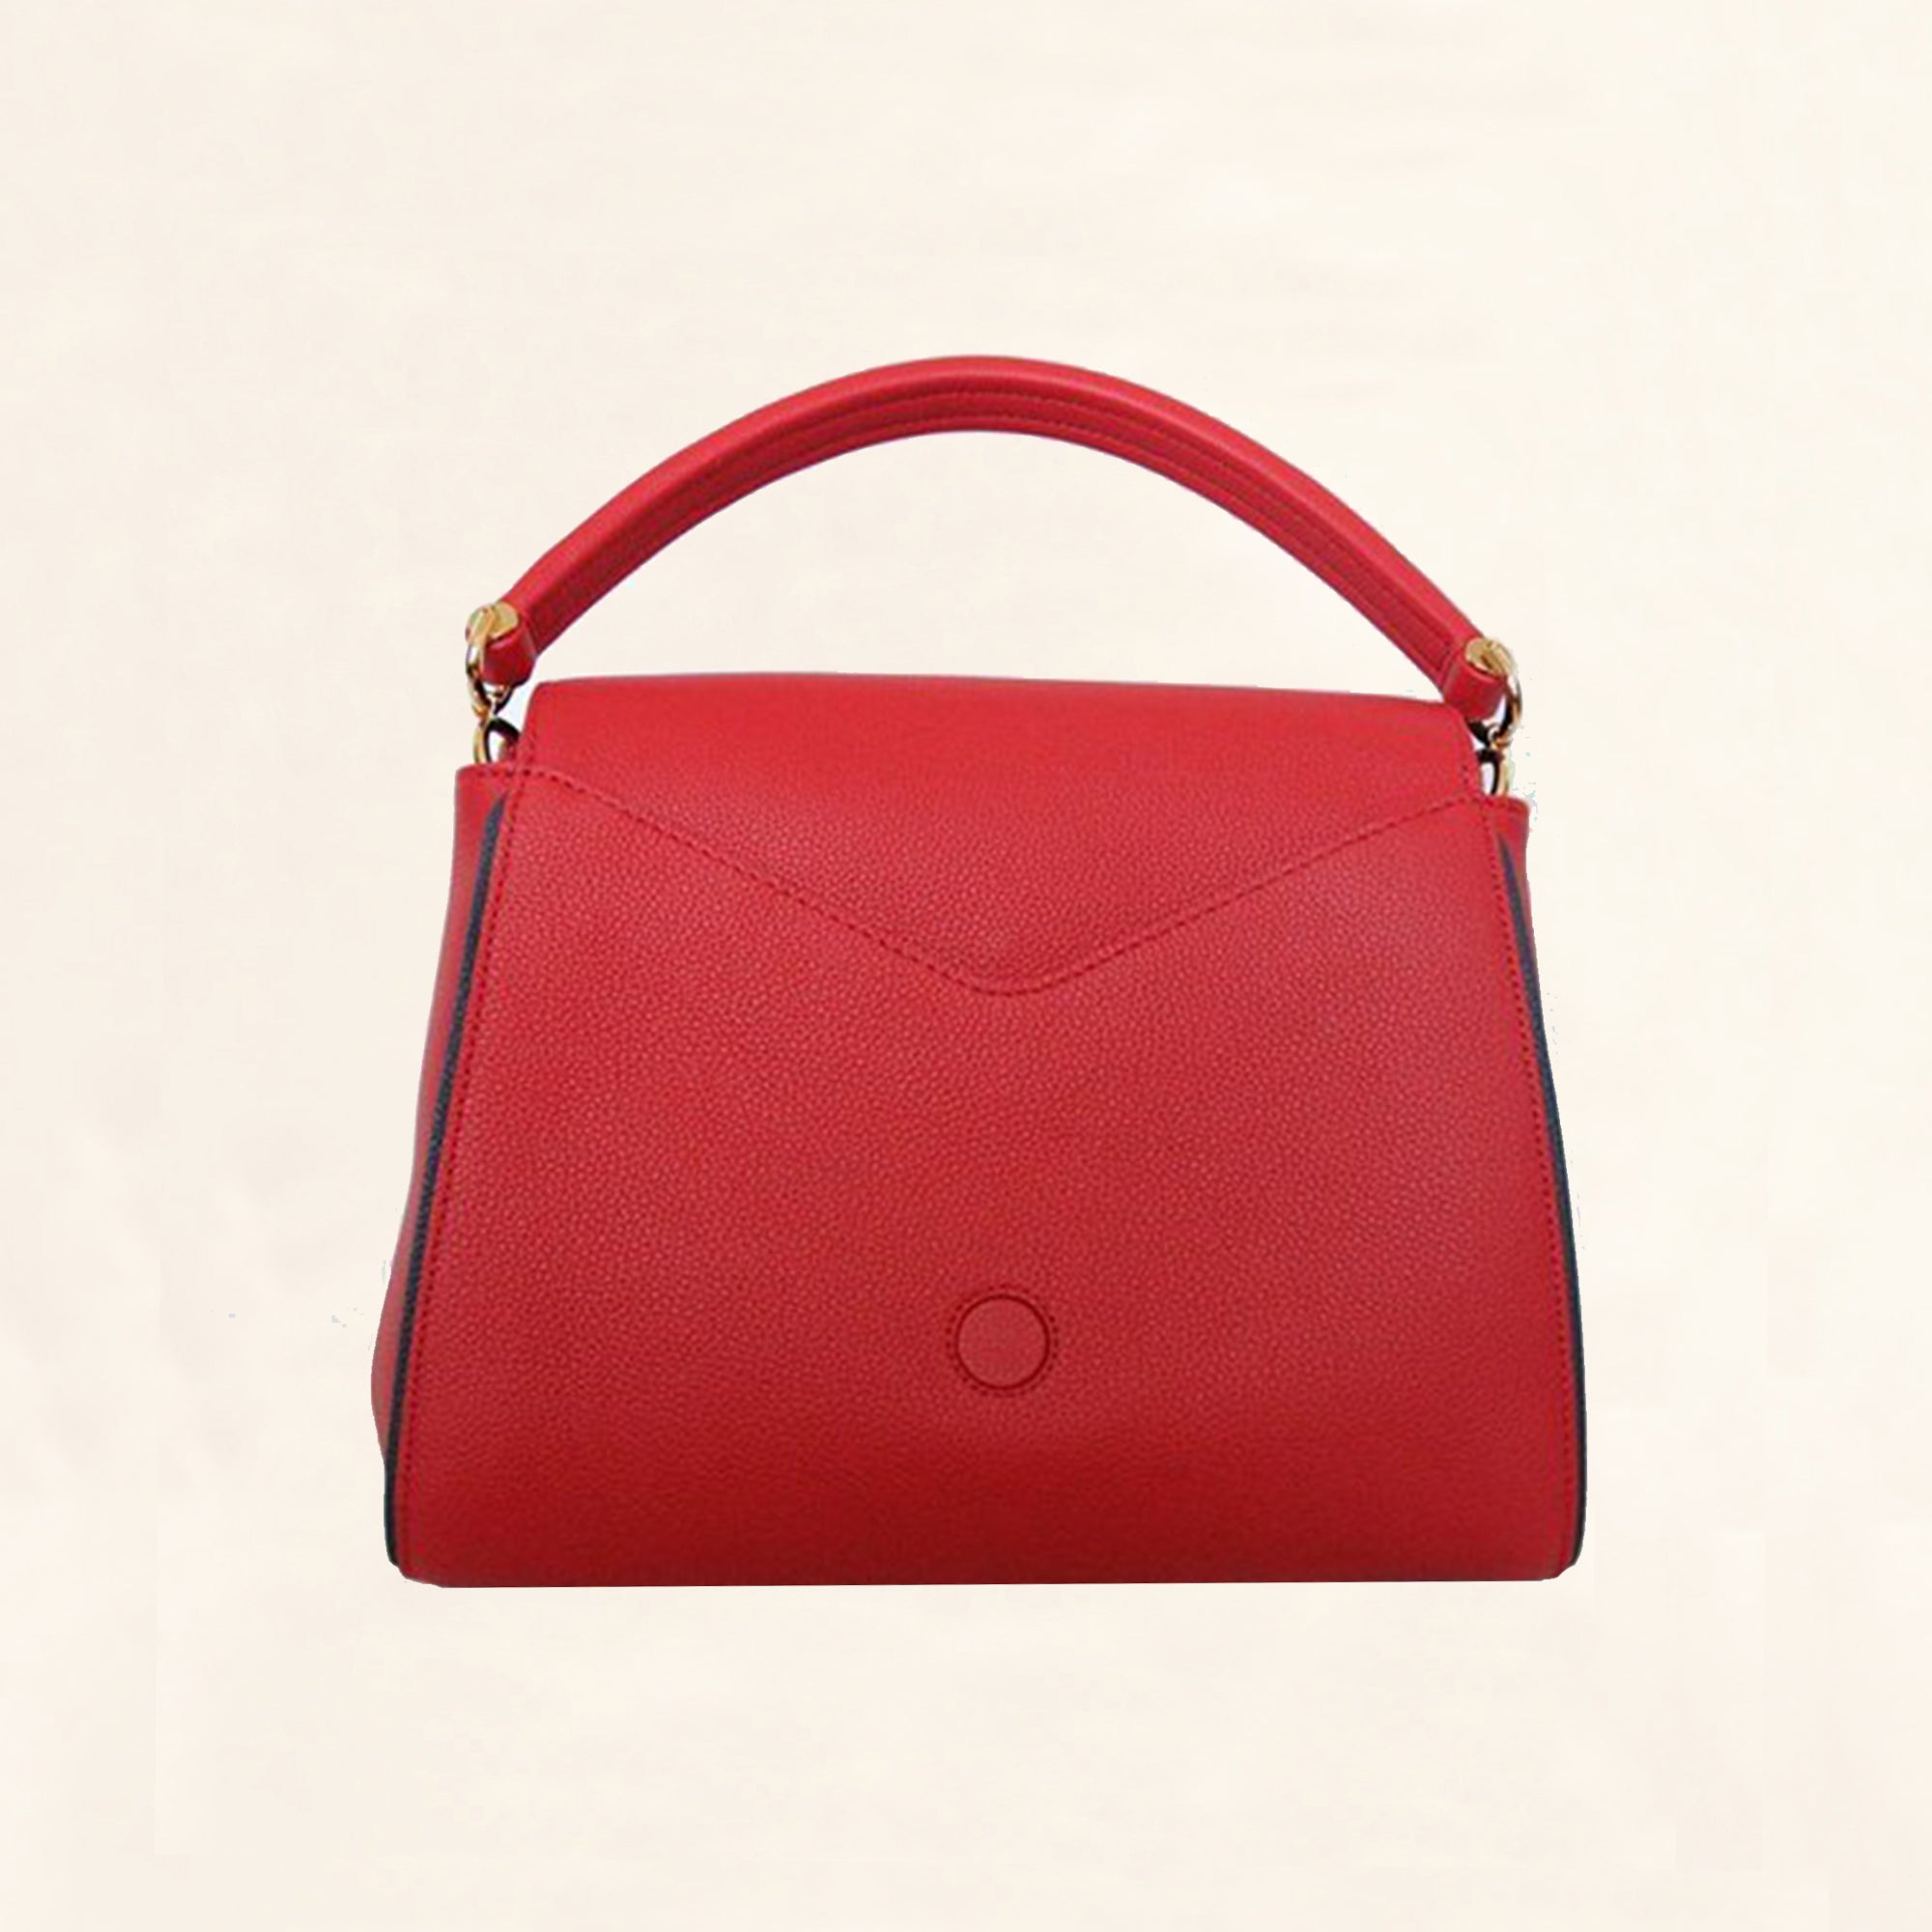 Louis Vuitton Double V Monogram Shoulder Bag